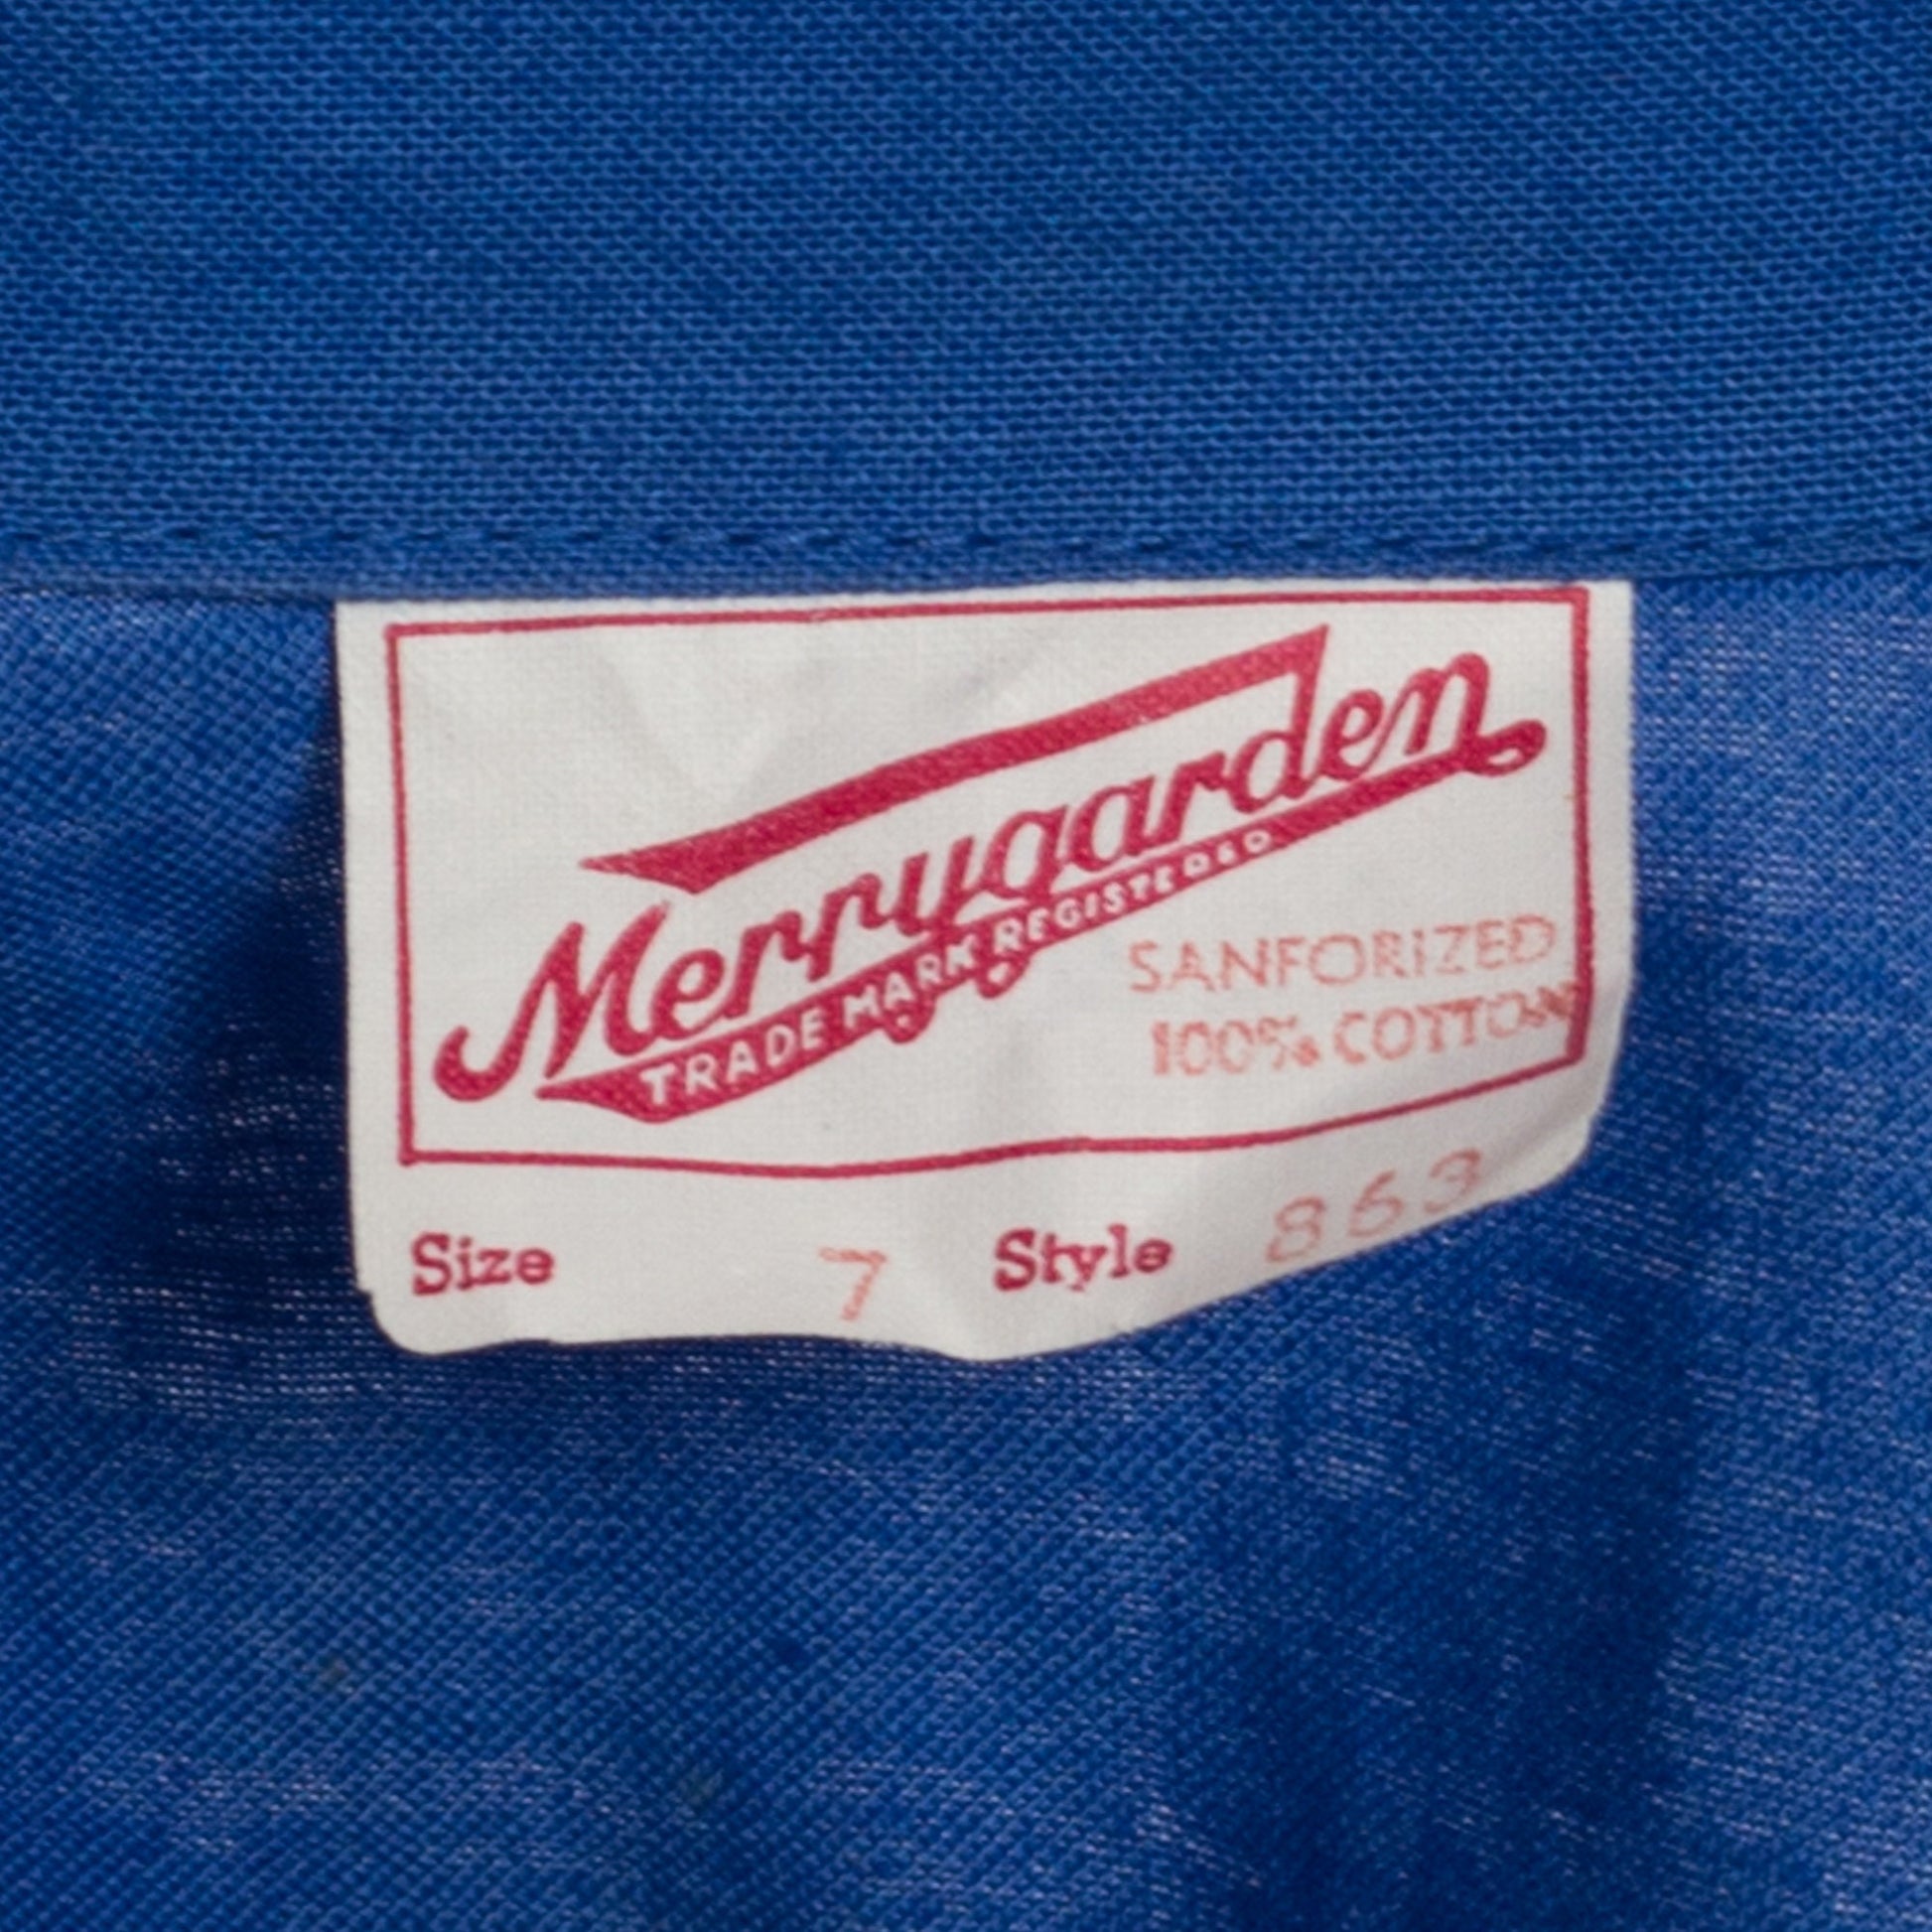 Petite XS 1950s Blue Gym Uniform Romper | Vintage 50s Merrygarden Short Sleeve Snap Front Cotton P.E. Playsuit